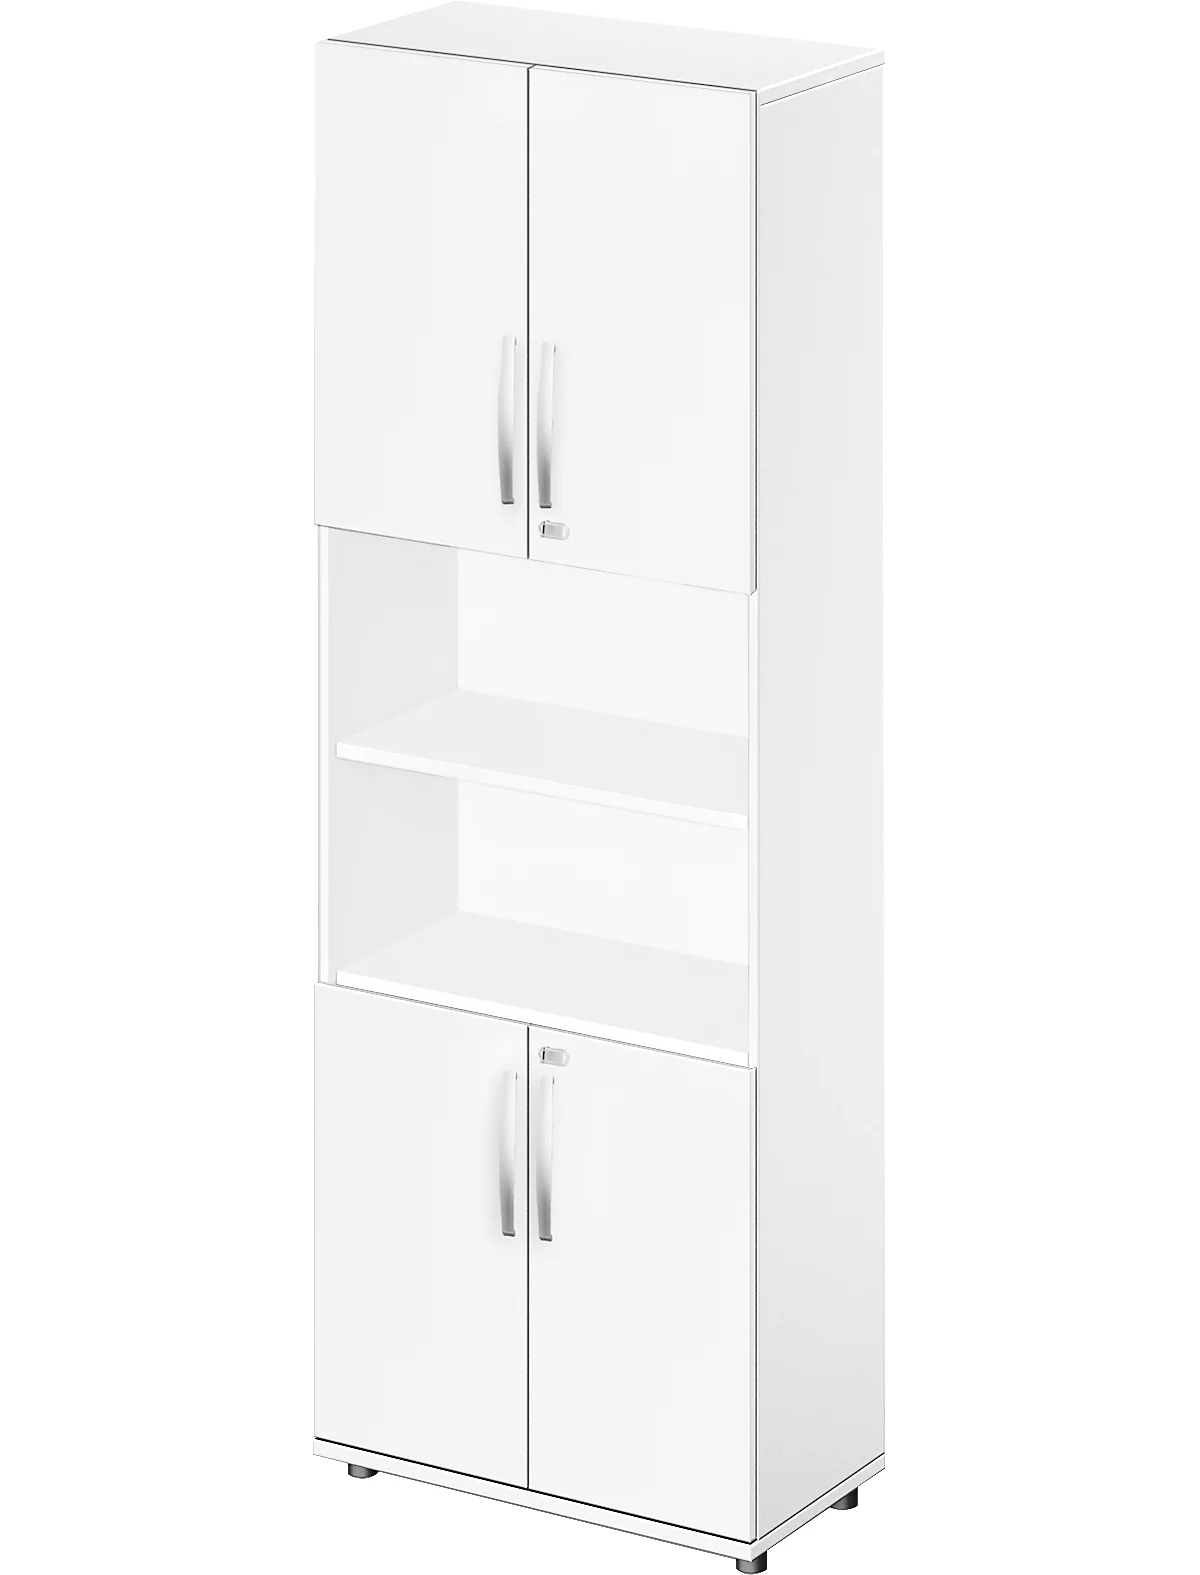 Schäfer Shop Select LOGIN armario combinado, arriba y abajo 2 alturas de archivador con puerta, balda central, An 800 x P 420 x Al 2240 mm, blanco/blanco